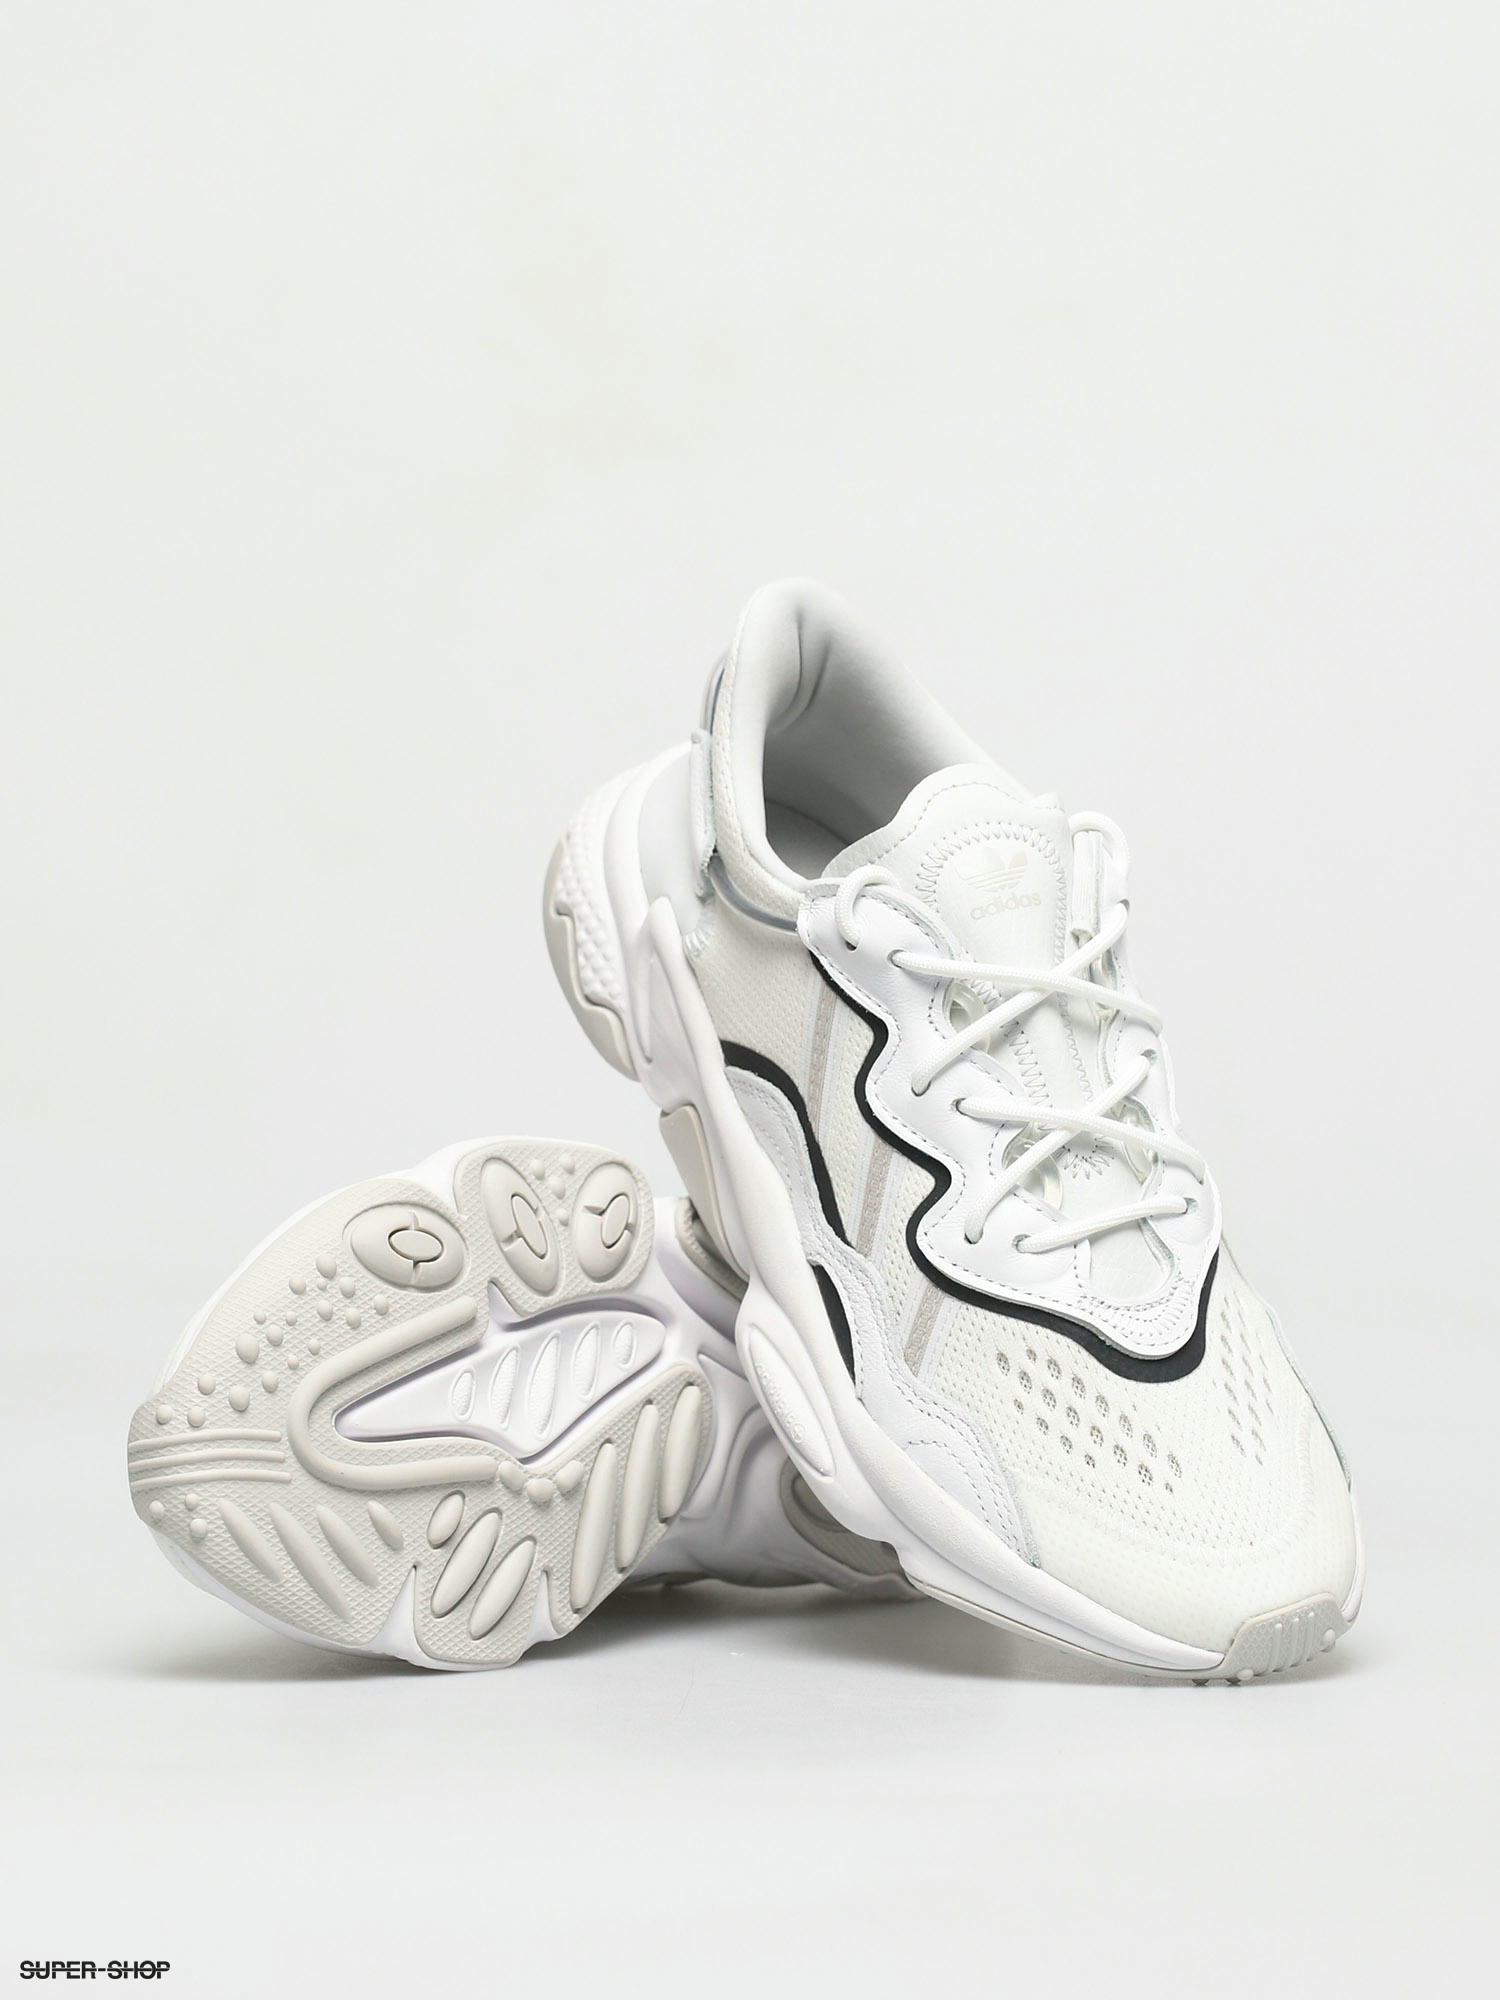 adidas ozweego white and grey